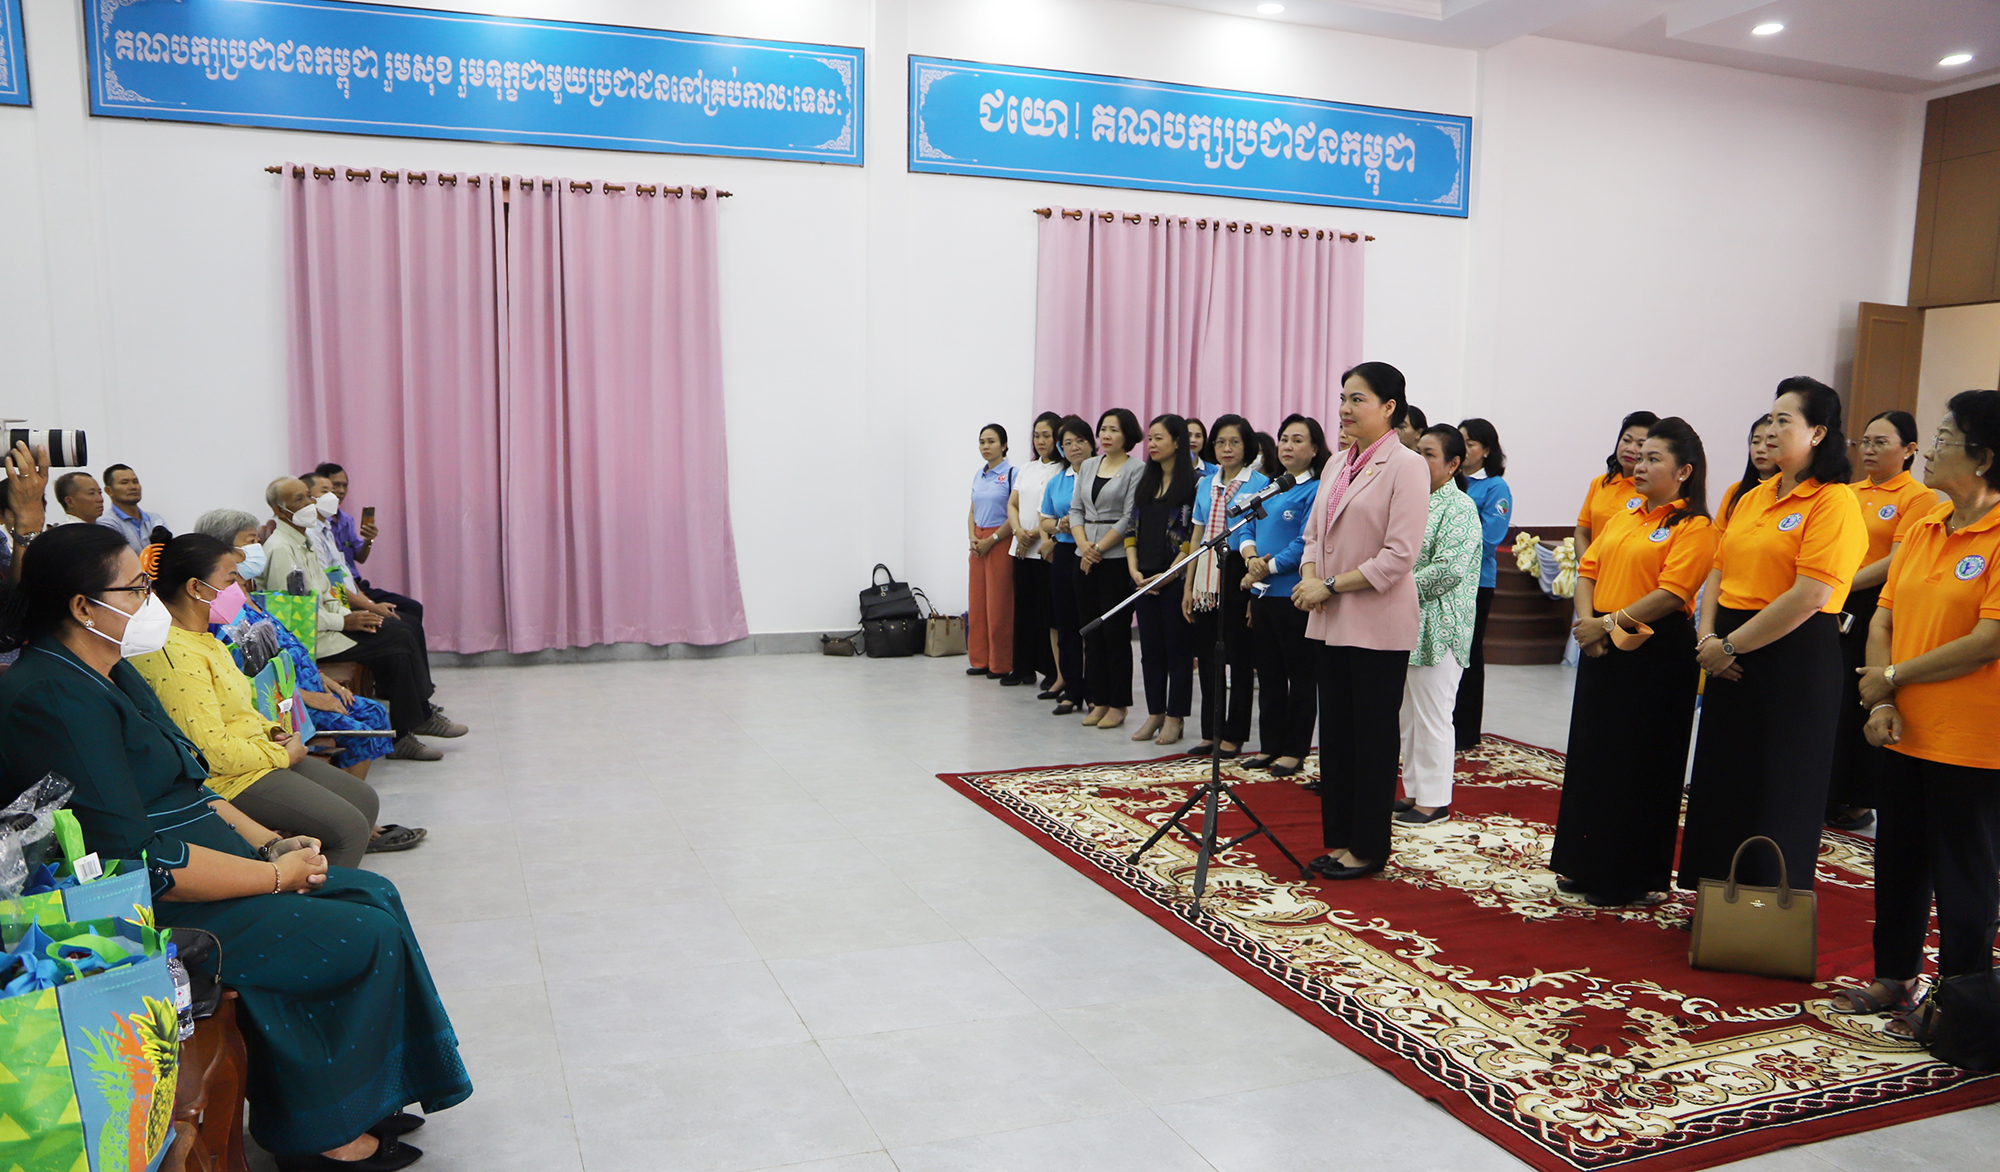 Cuộc gặp xúc động với những phụ nữ Campuchia từng hỗ trợ quân tình nguyện Việt Nam và người Việt sinh sống tại tỉnh Kampot  - Ảnh 2.